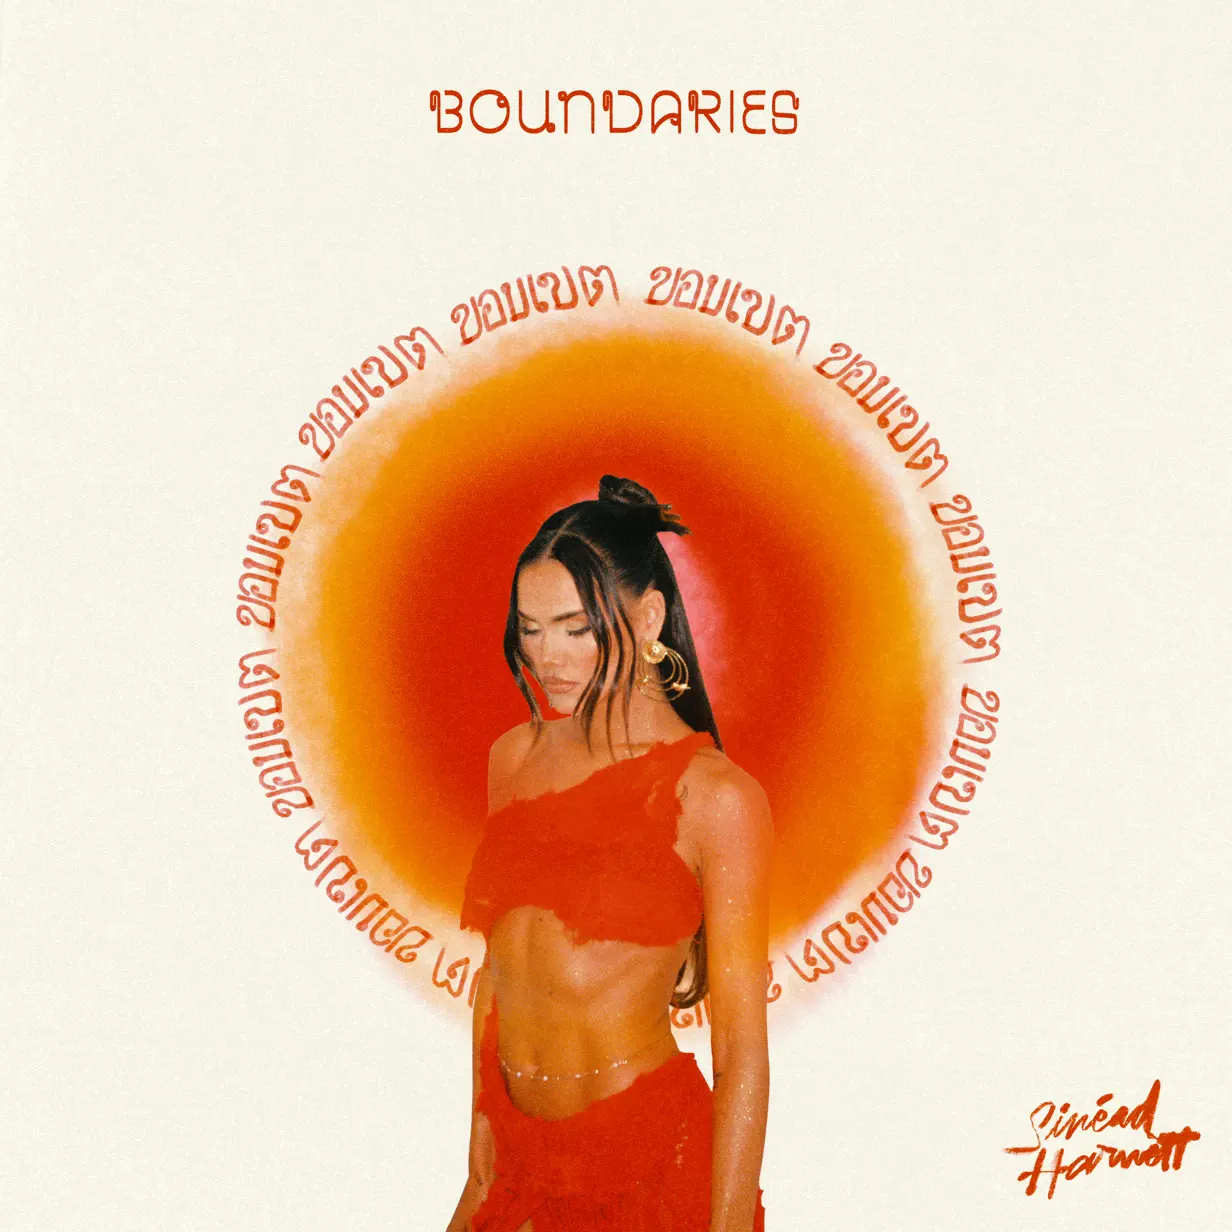 Sinéad Harnett‘s “Boundaries” Album Download ZIP MP3 Free File